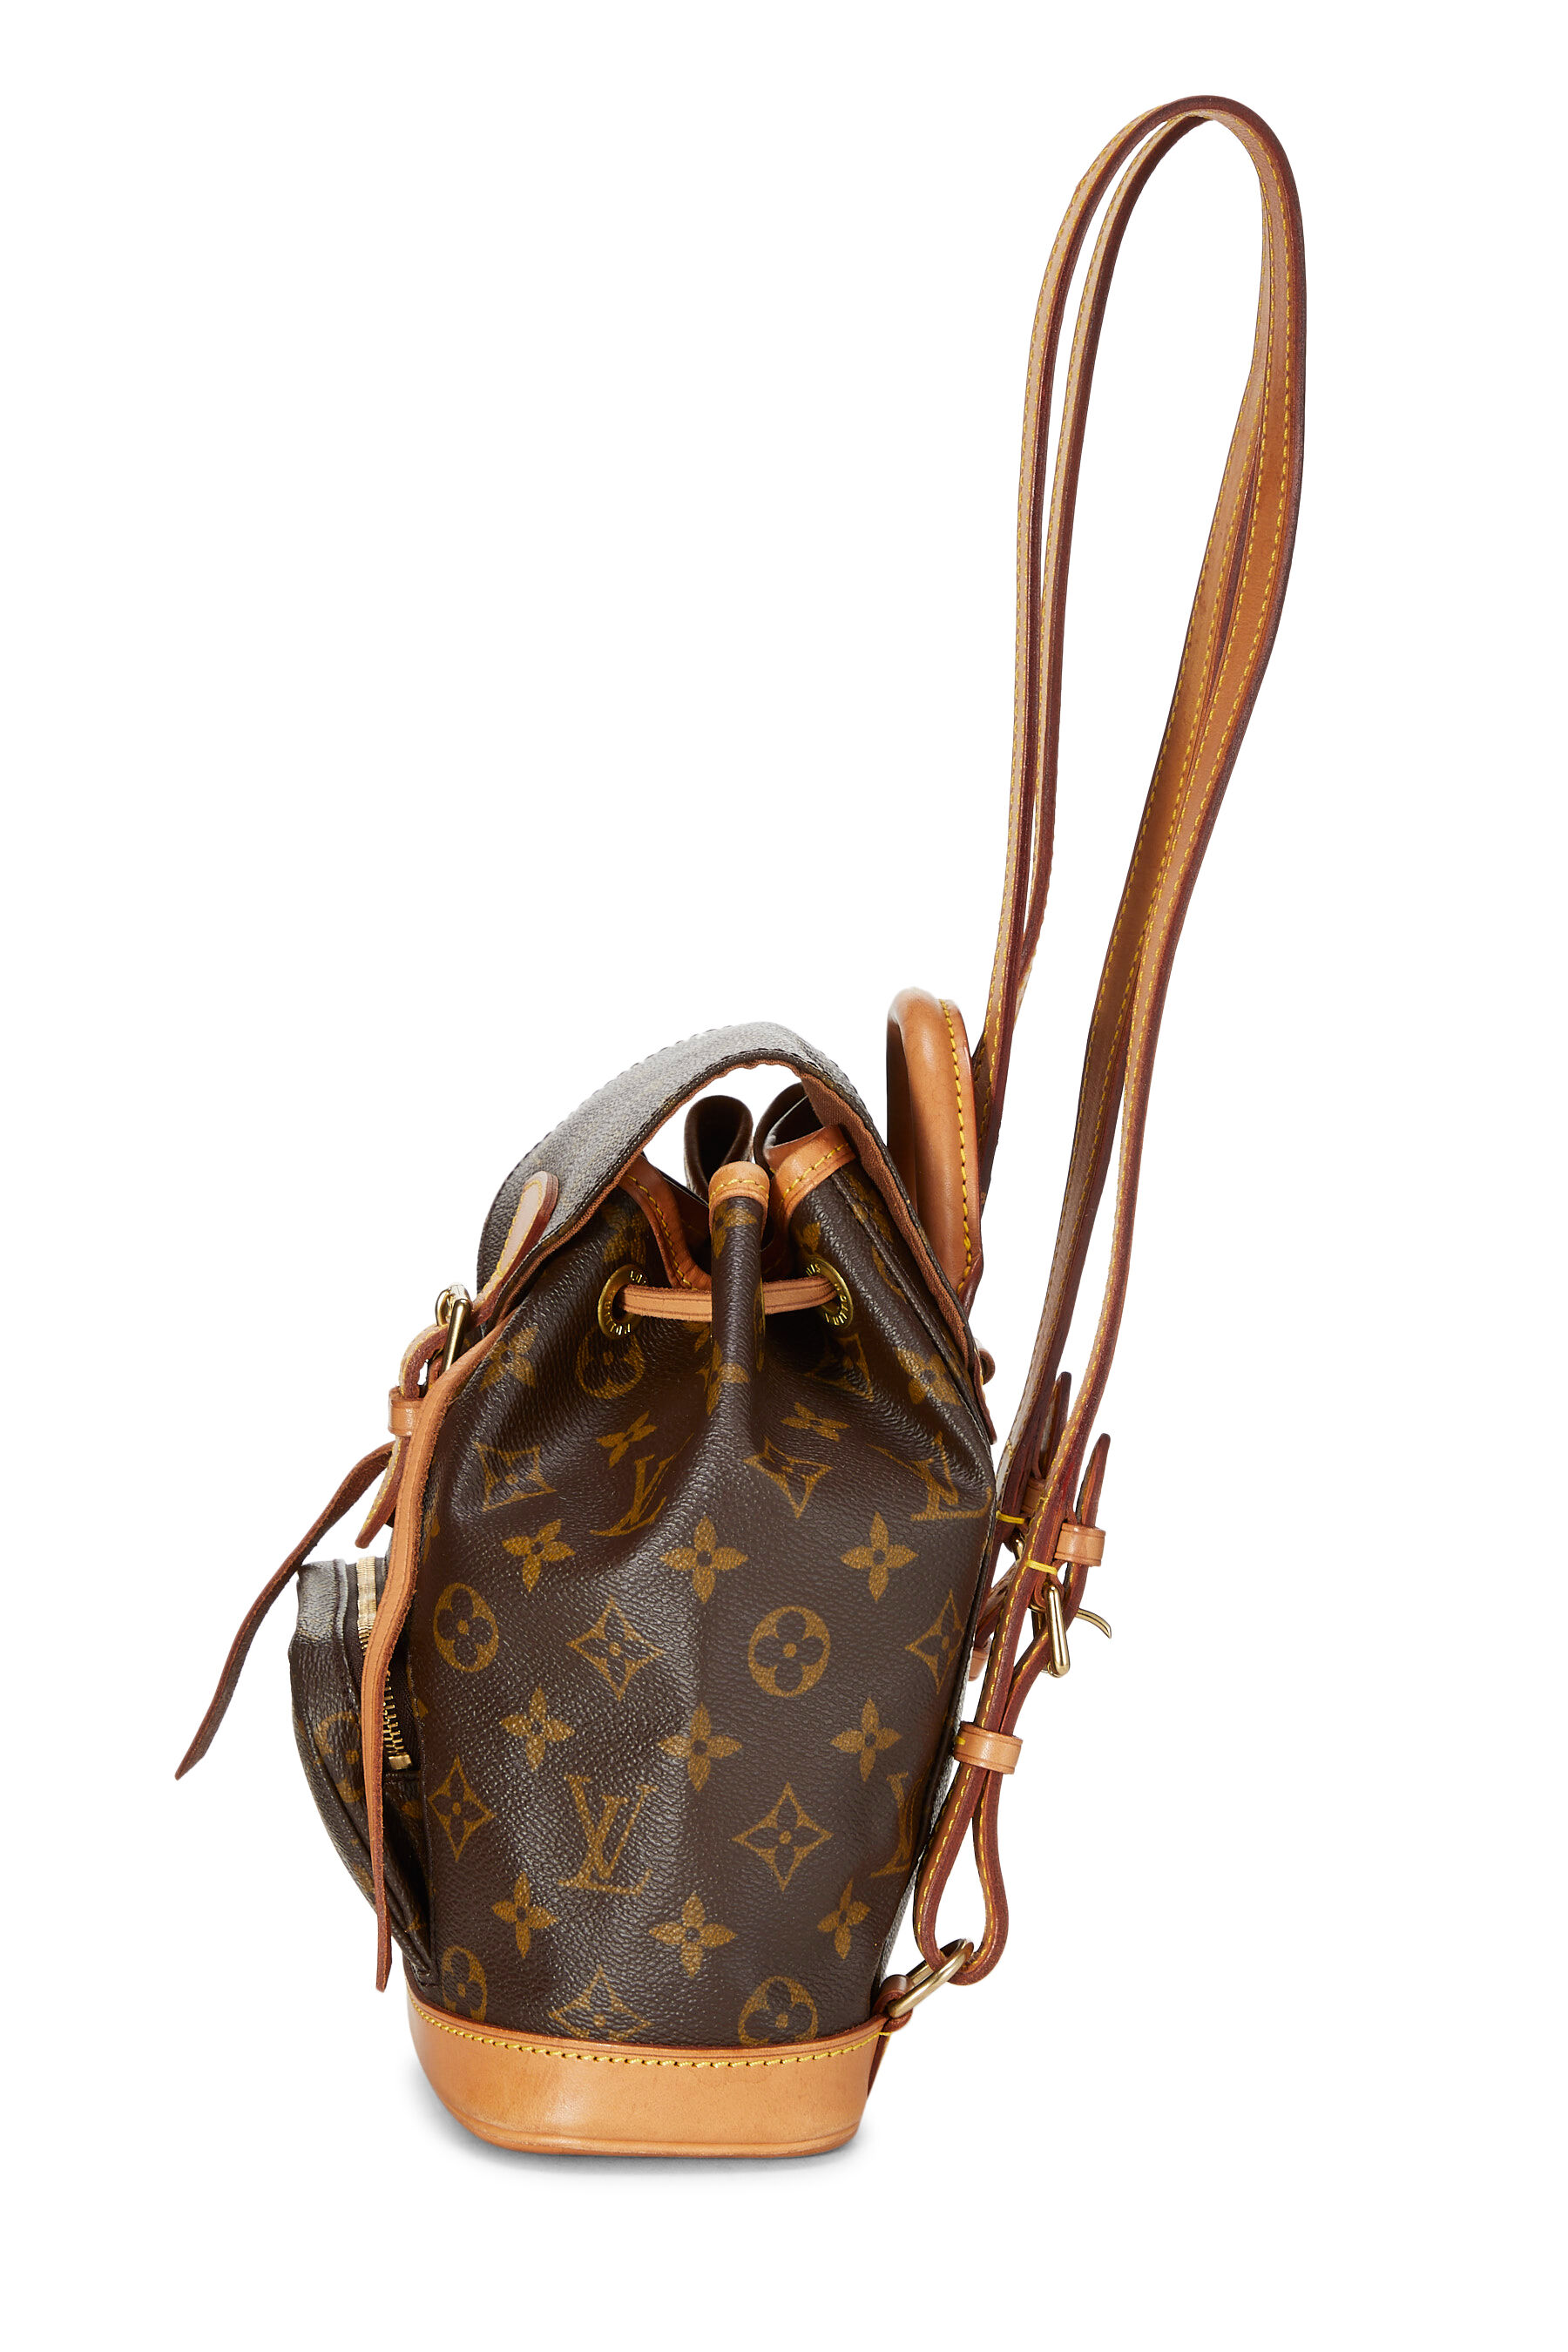 Shop Louis Vuitton Montsouris Pm - Exclusively Online (M45205, M45410) by  design◇base